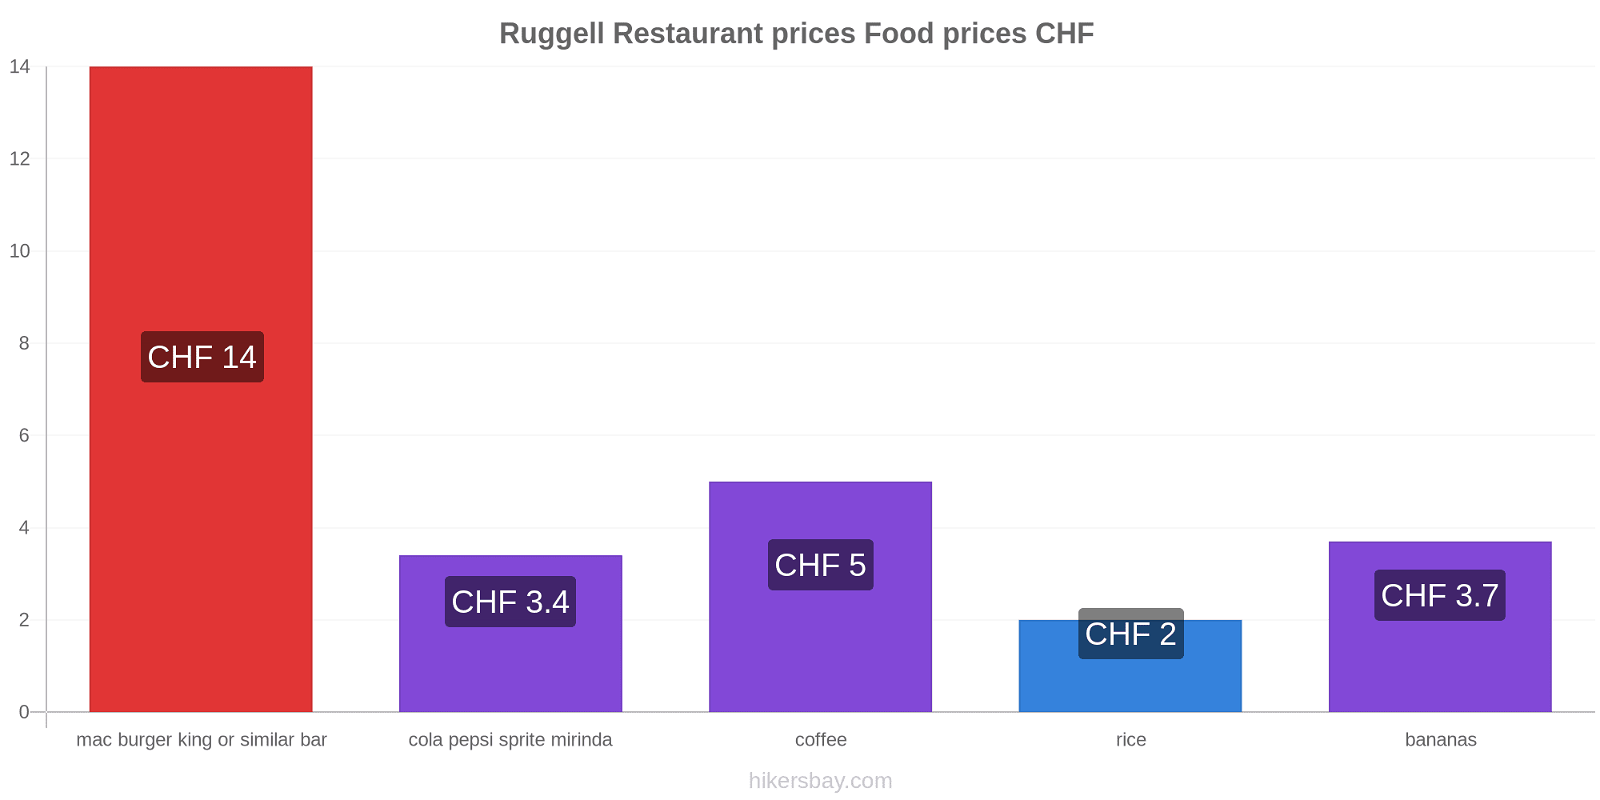 Ruggell price changes hikersbay.com